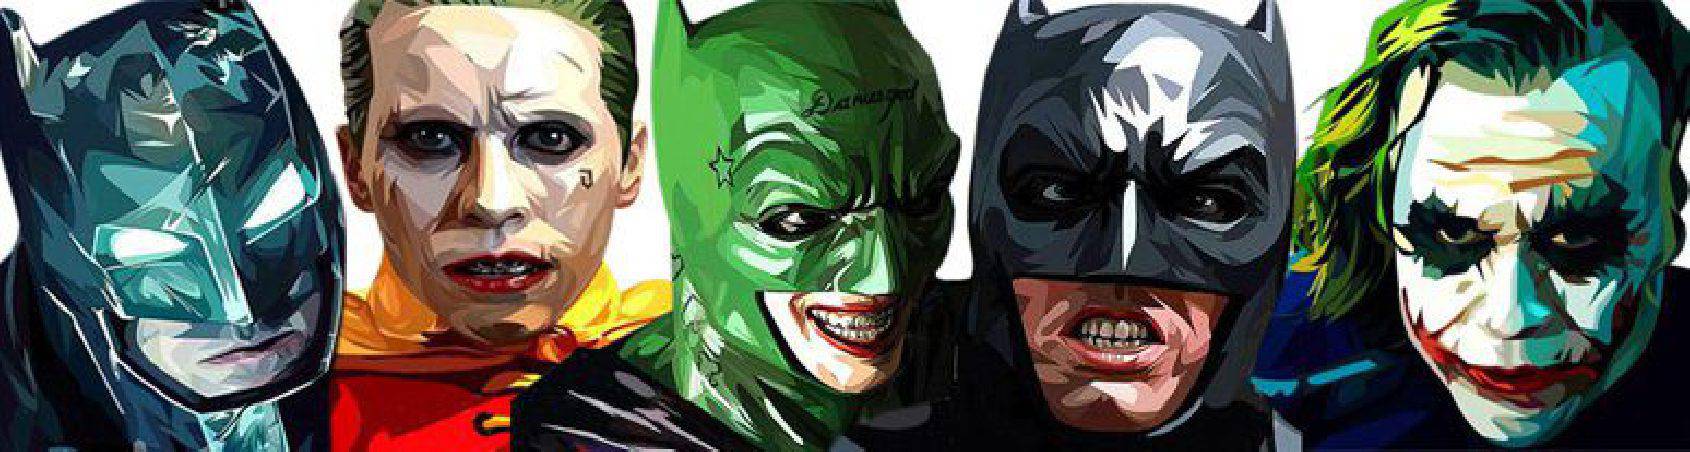 Batman & Joker DC-Comics | imágenes decorar estilo Pop-Art